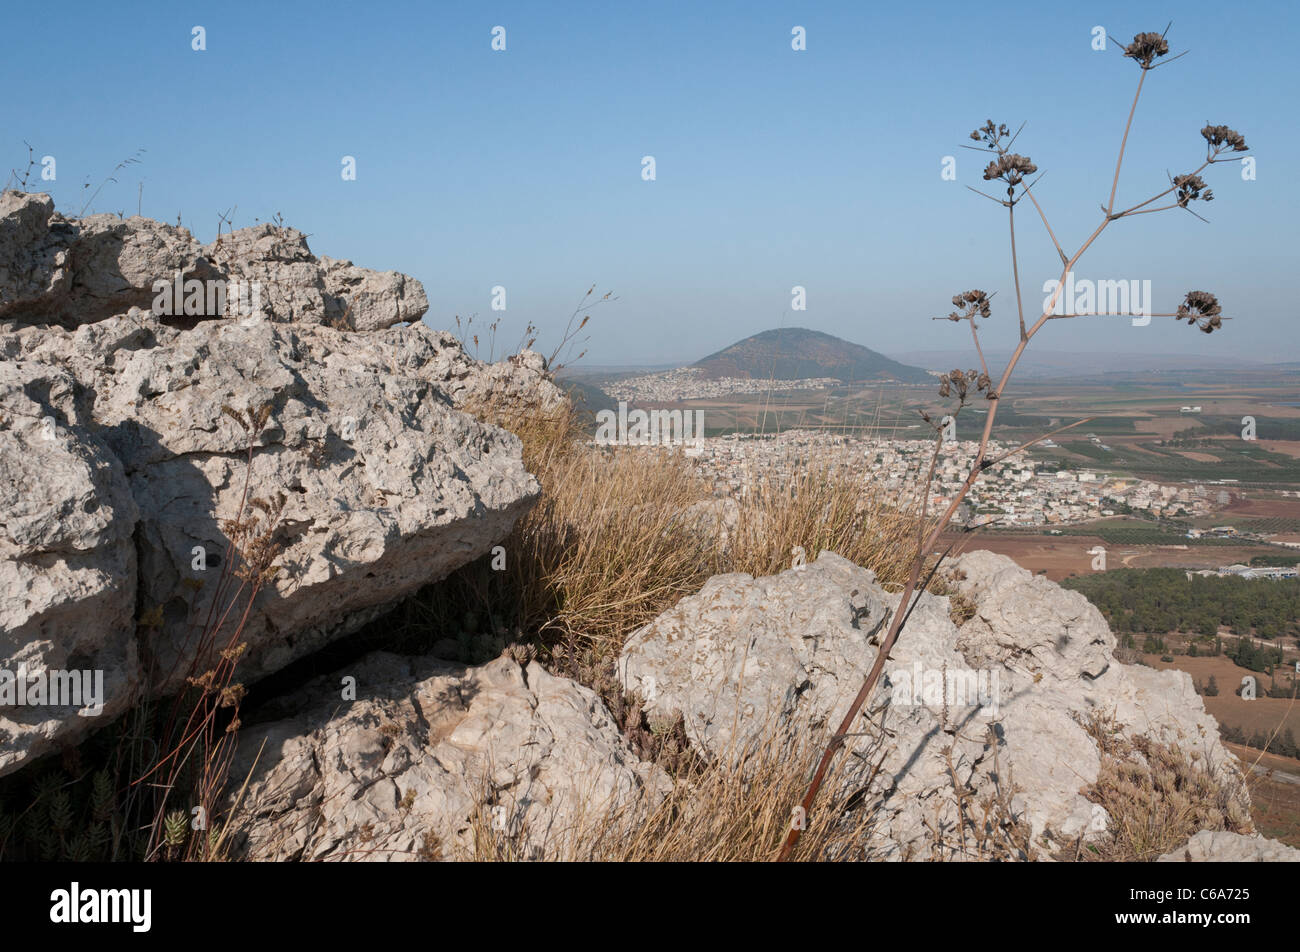 Monte precipicio con vista hacia el monte Tabor. Nazaret. Israel Foto de stock